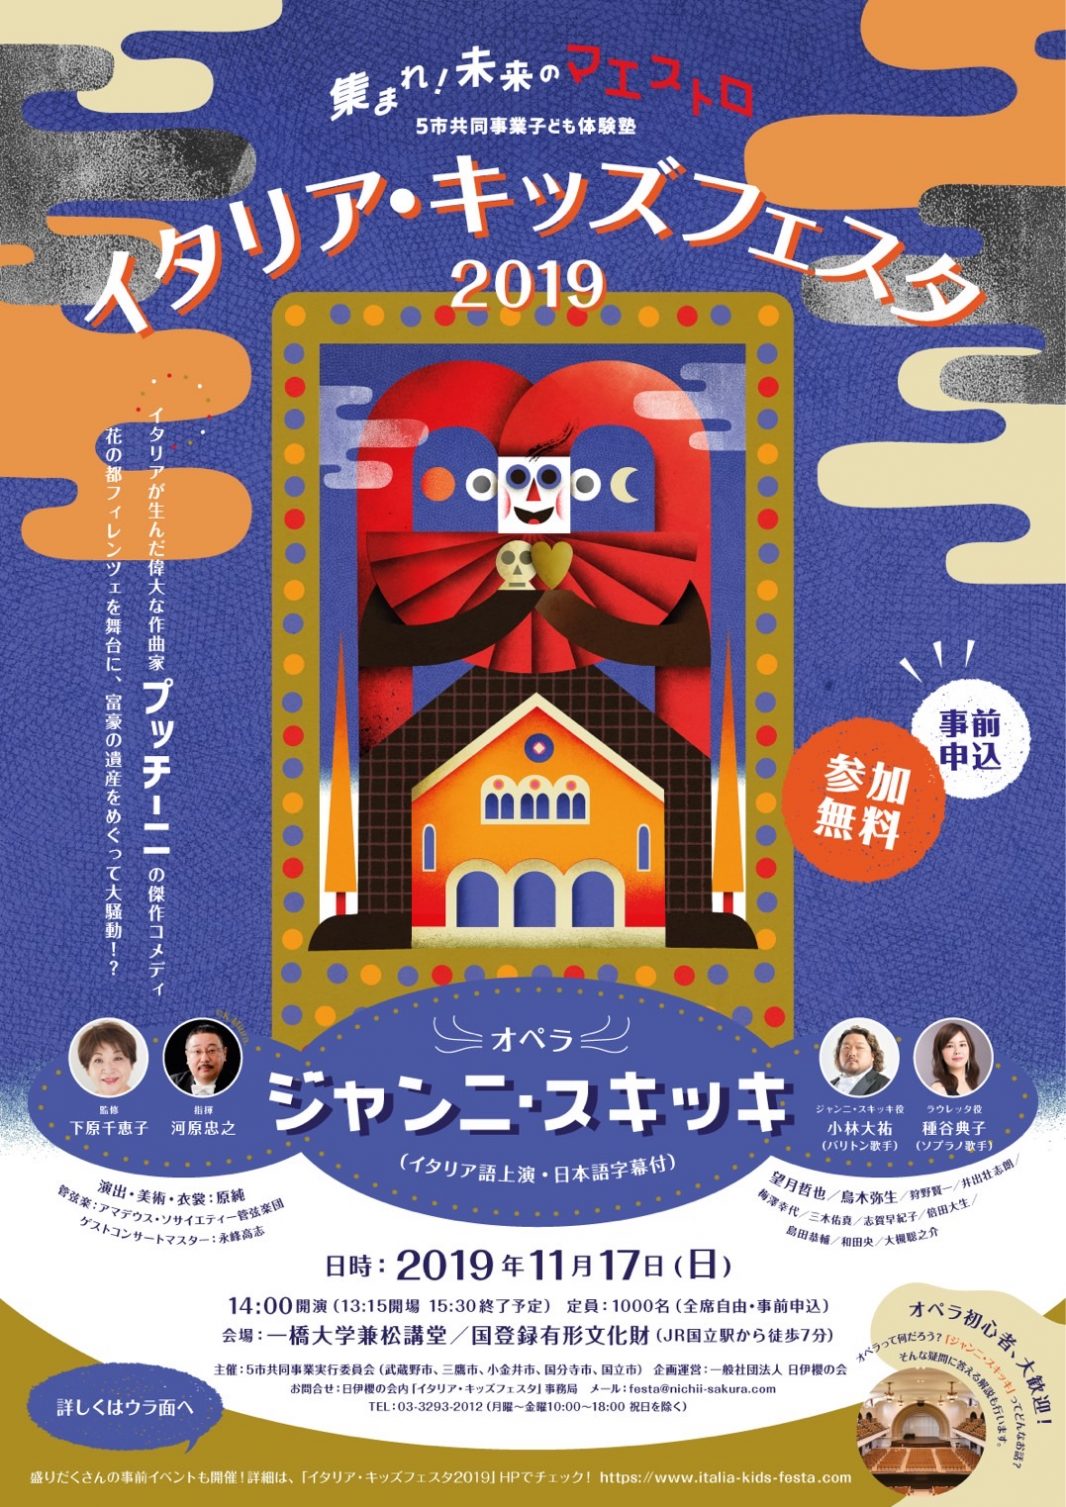 相模大野教室梅澤先生が出演致します。2019年11月17日オペラ・ジャンニ・スキッキ